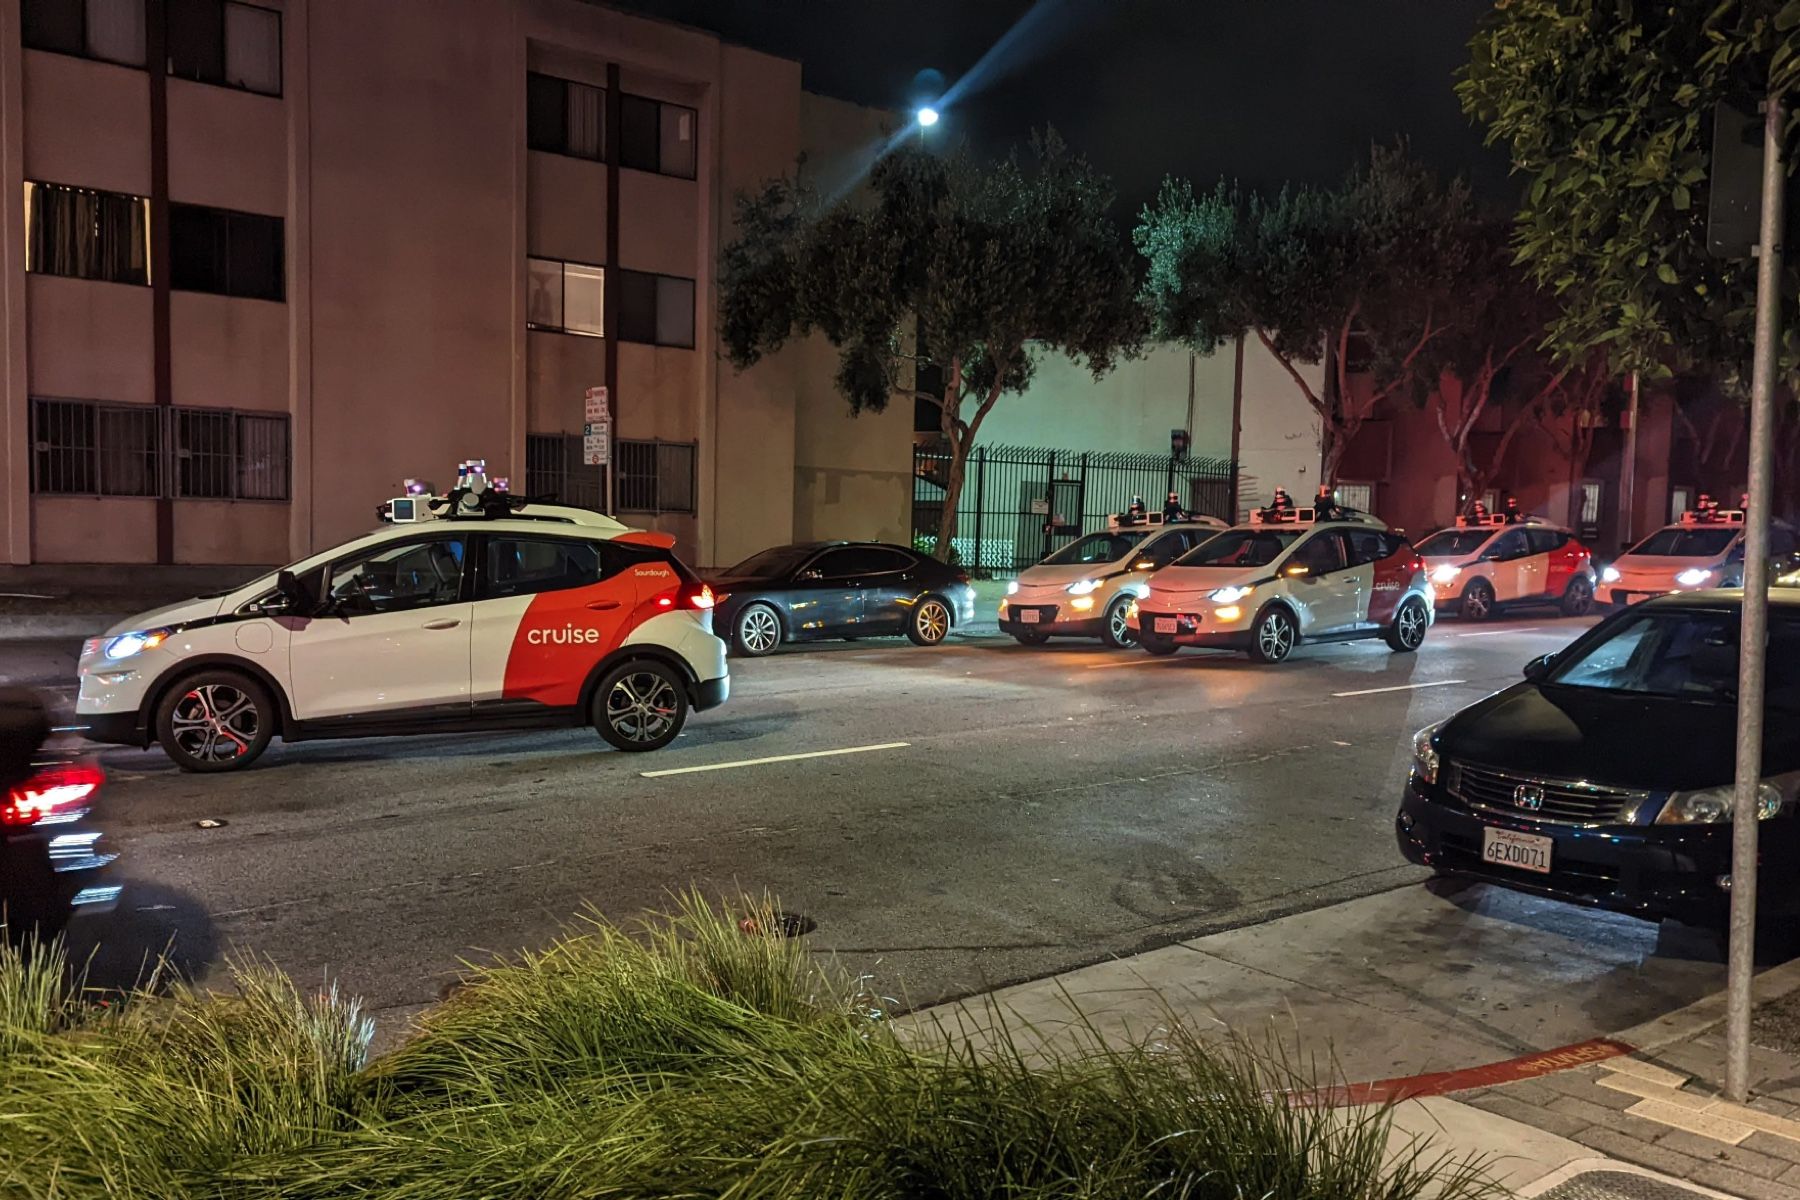 GM Cruise robotaxis randomly gather to block San Francisco street